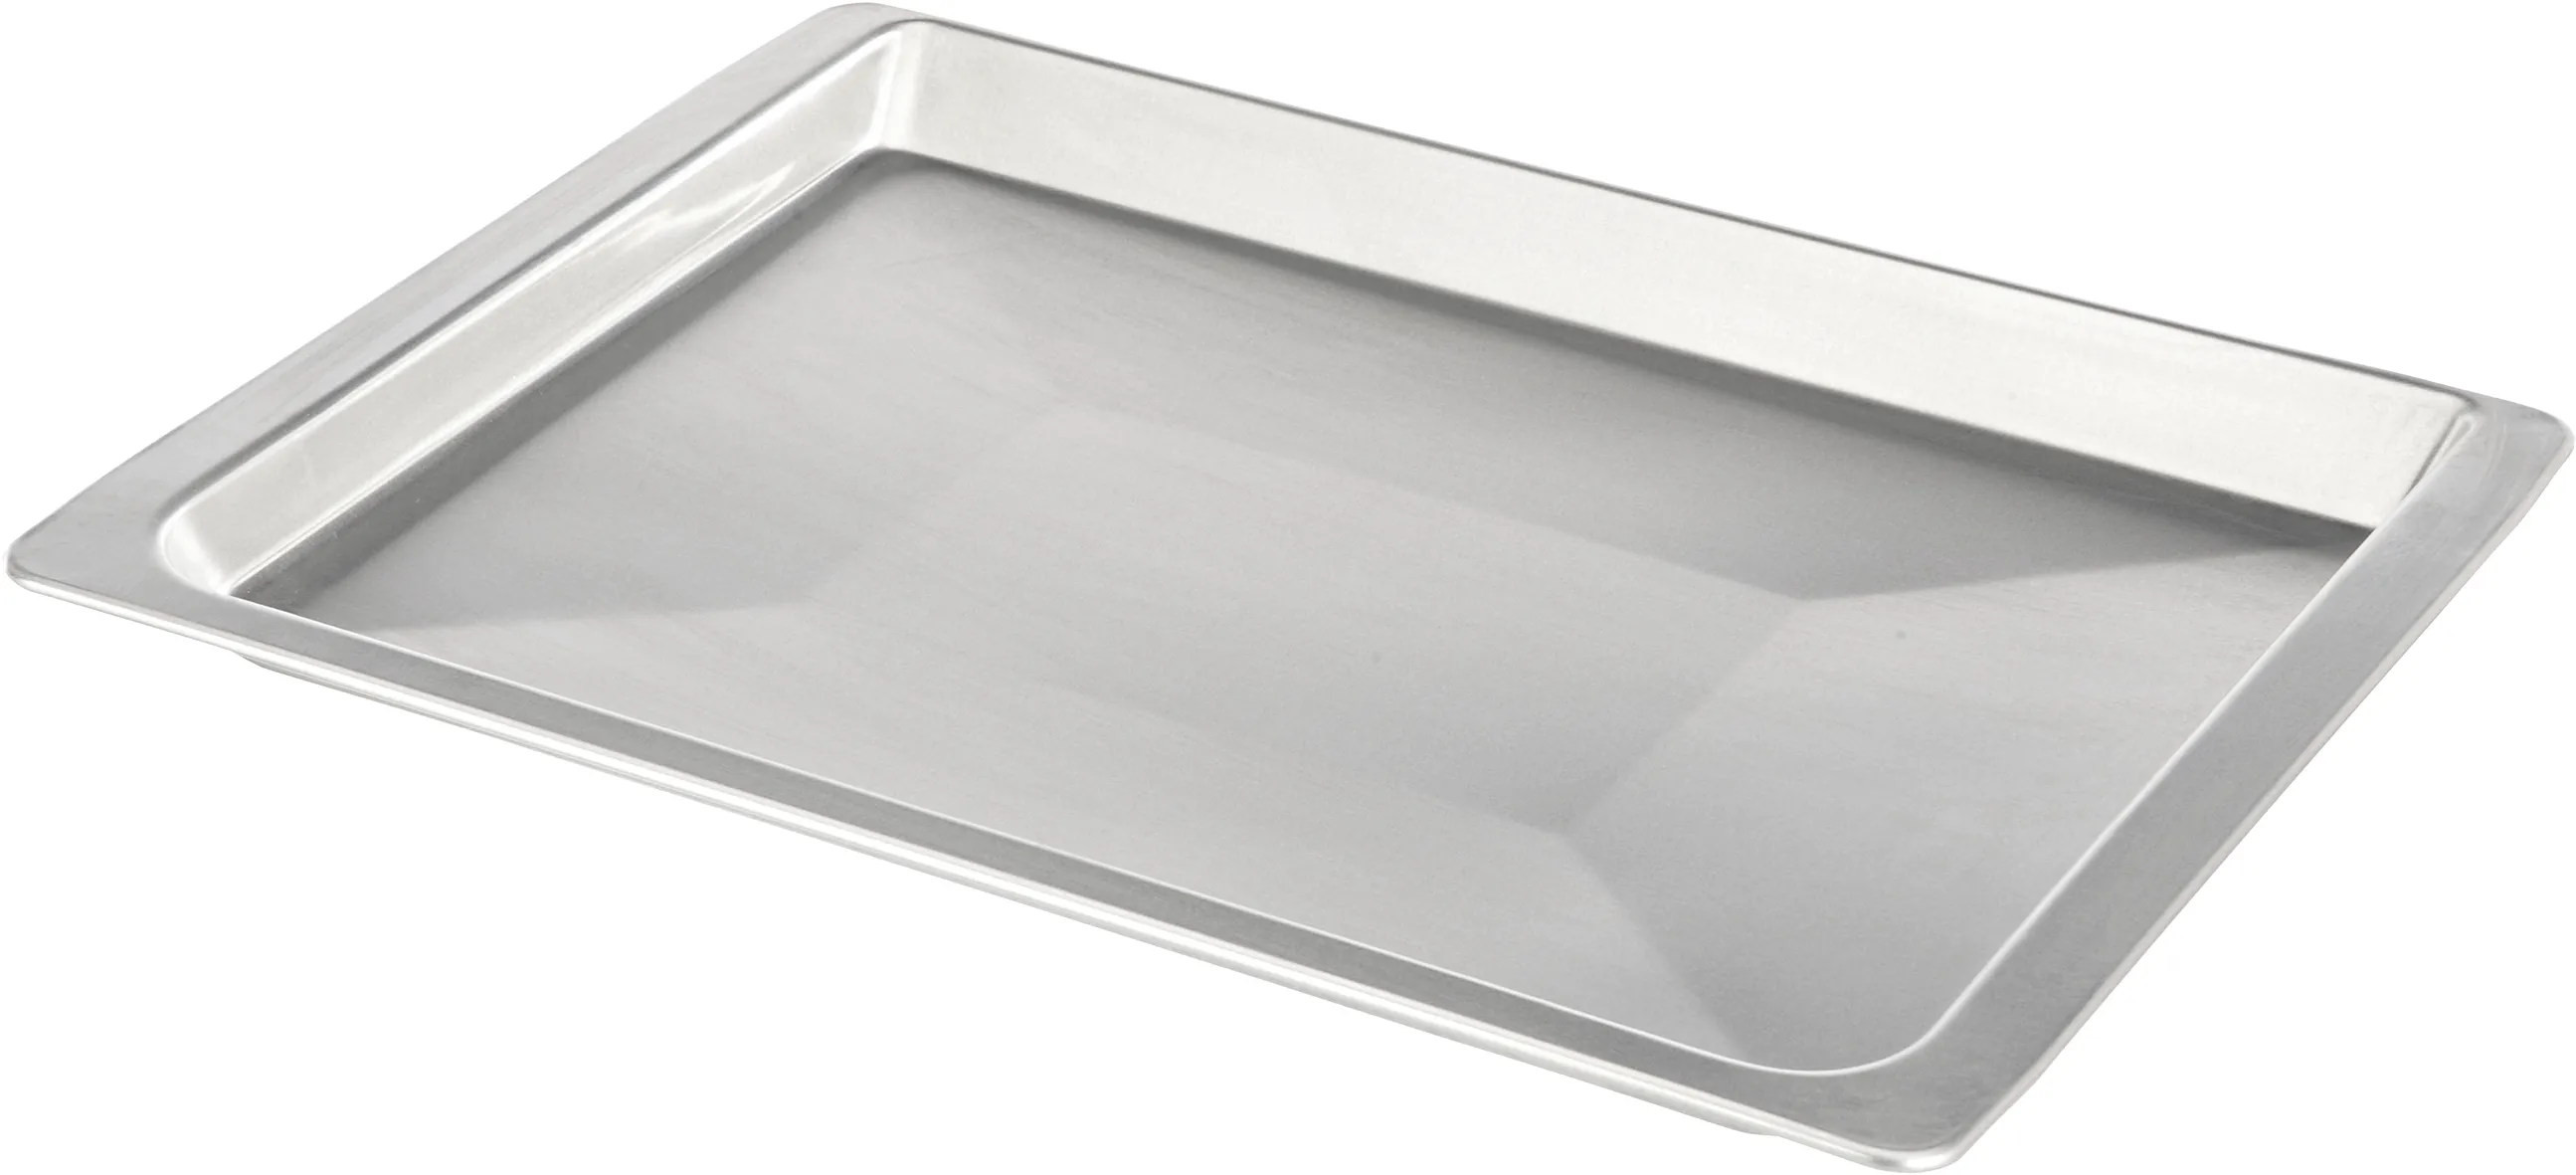 Baking tray Aluminium Tray 464.6 x345 